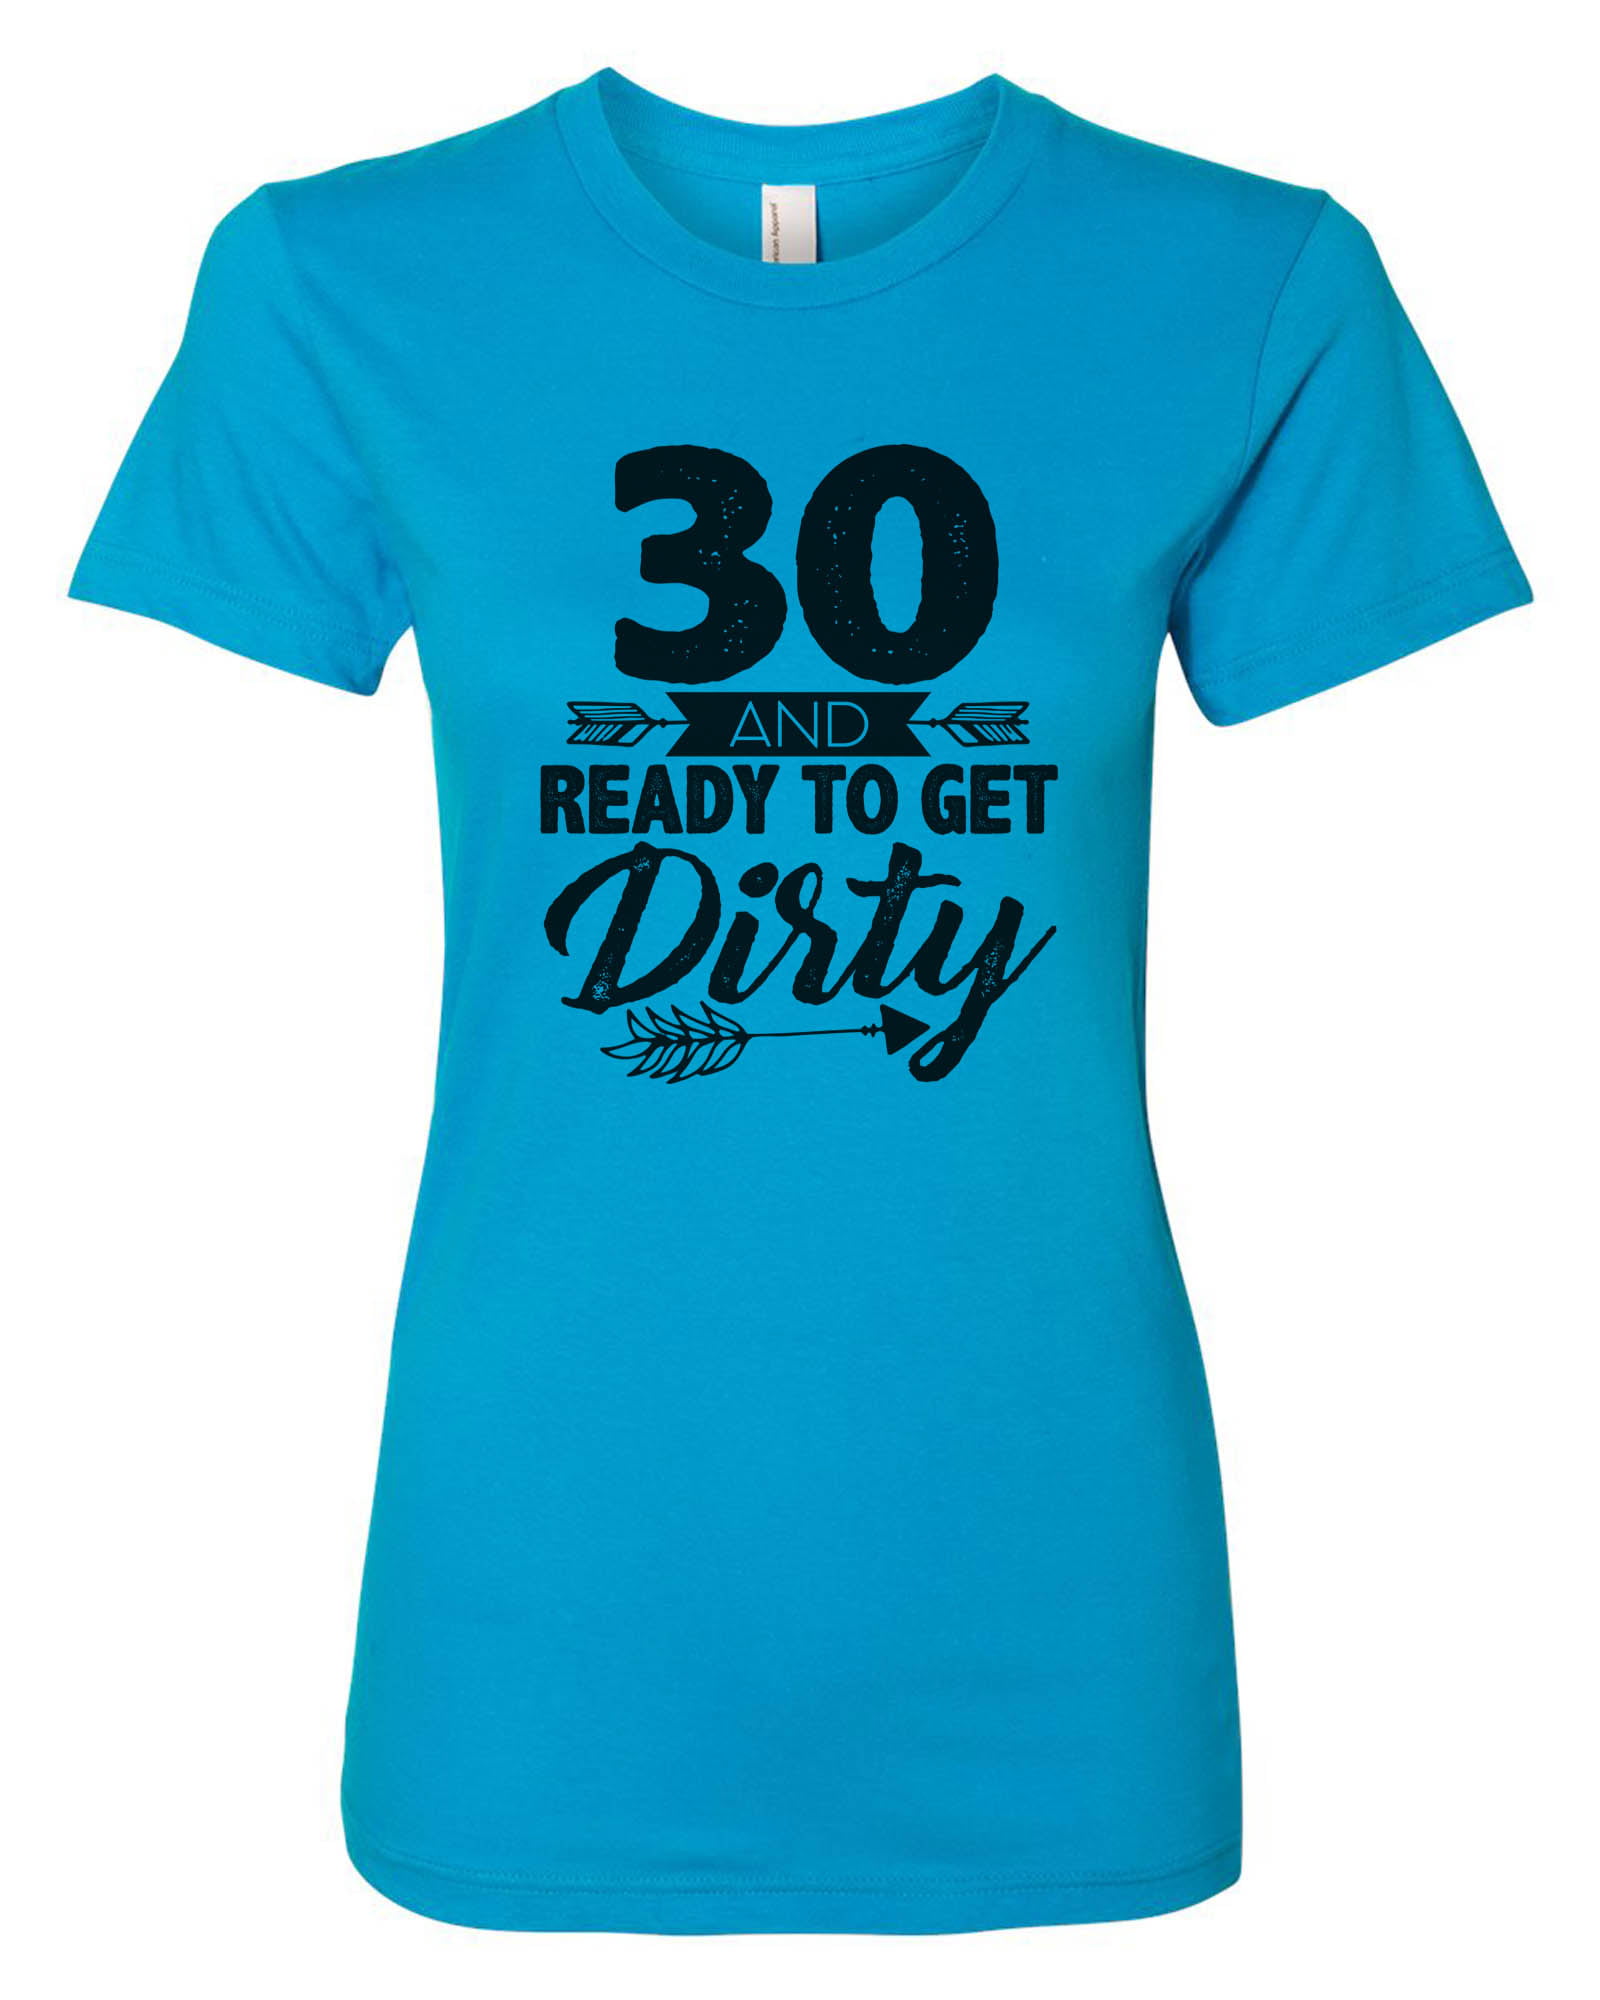 Funny Shirts Funny T Shirts Last Clean Shirt Funny Tee Shirts Messy Shirt Funny TShirts Dirty T Shirt Dirty Shirt Unisex Shirts